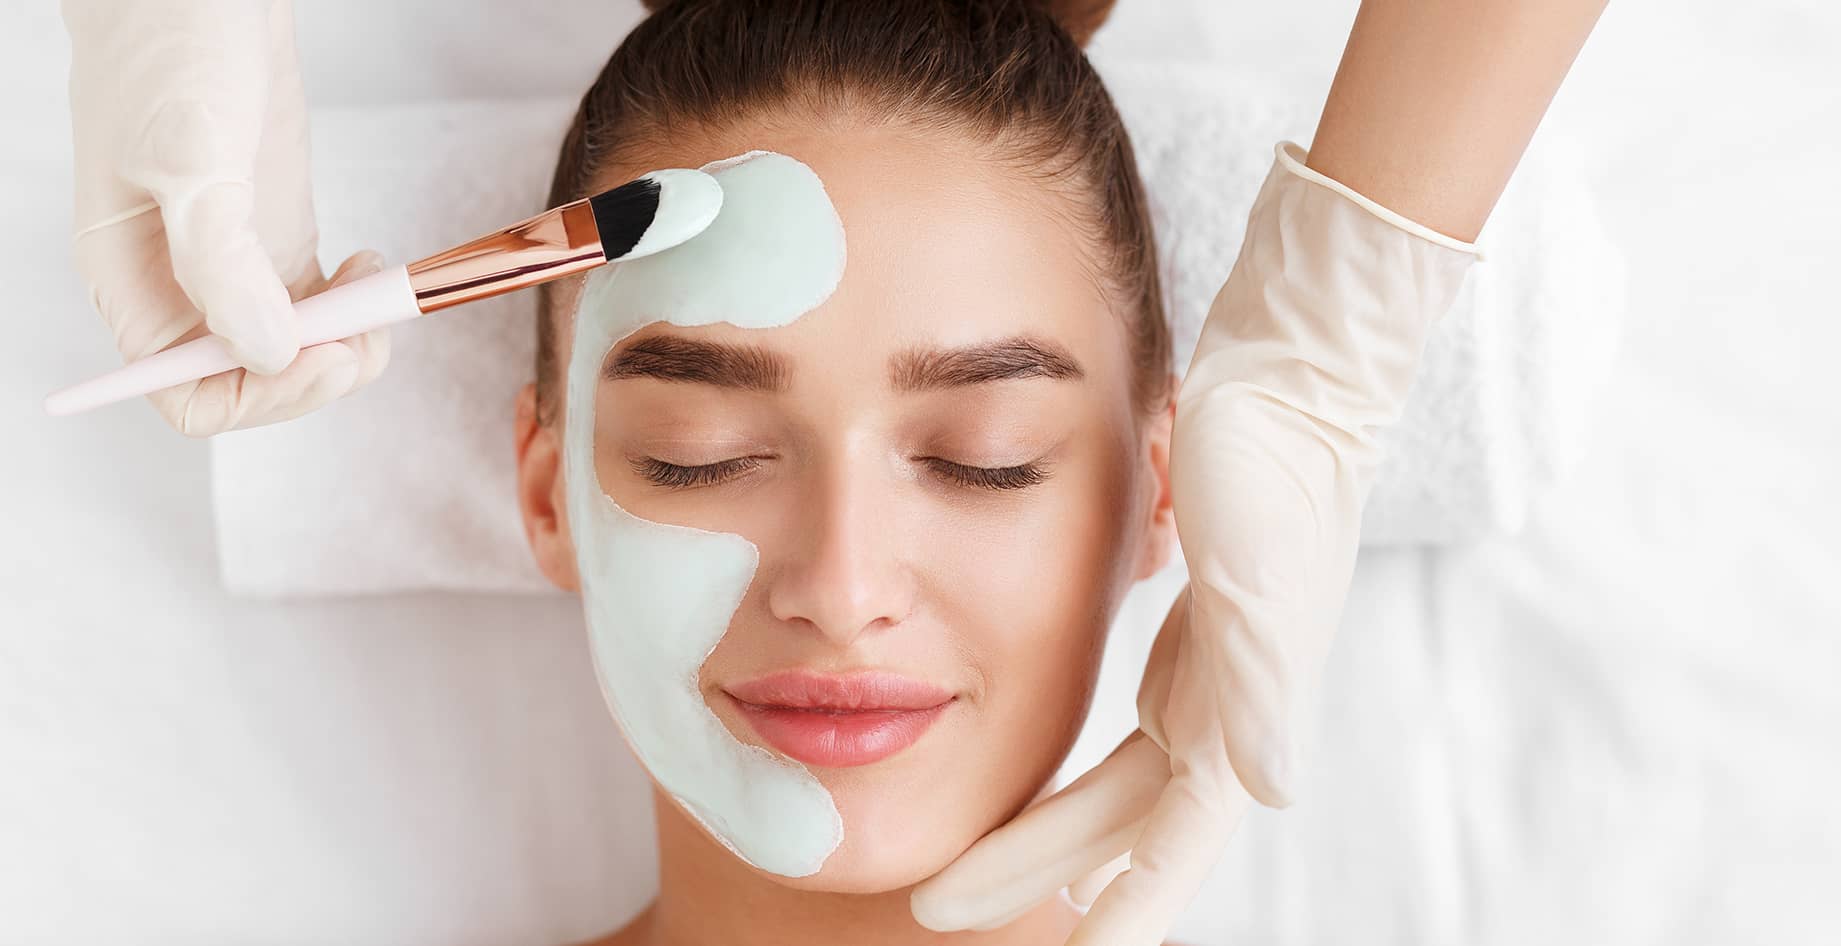 Le soin peeling est-il efficace contre l’acné ? | Dr Cormary | Lyon